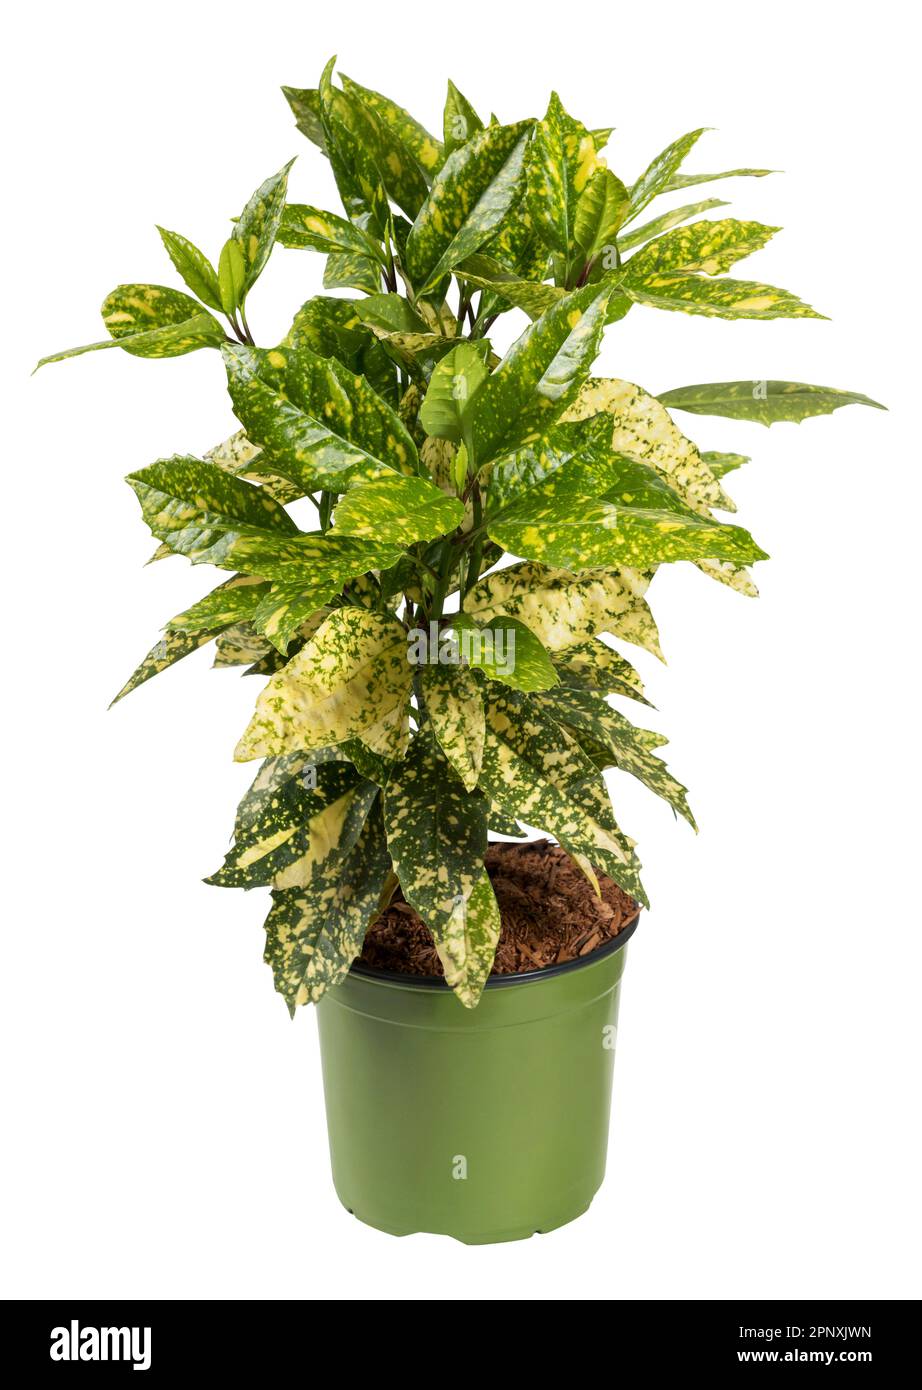 Plante de poussière d'or vert frais avec des feuilles tachetées poussant dans un pot isolé sur fond blanc Banque D'Images